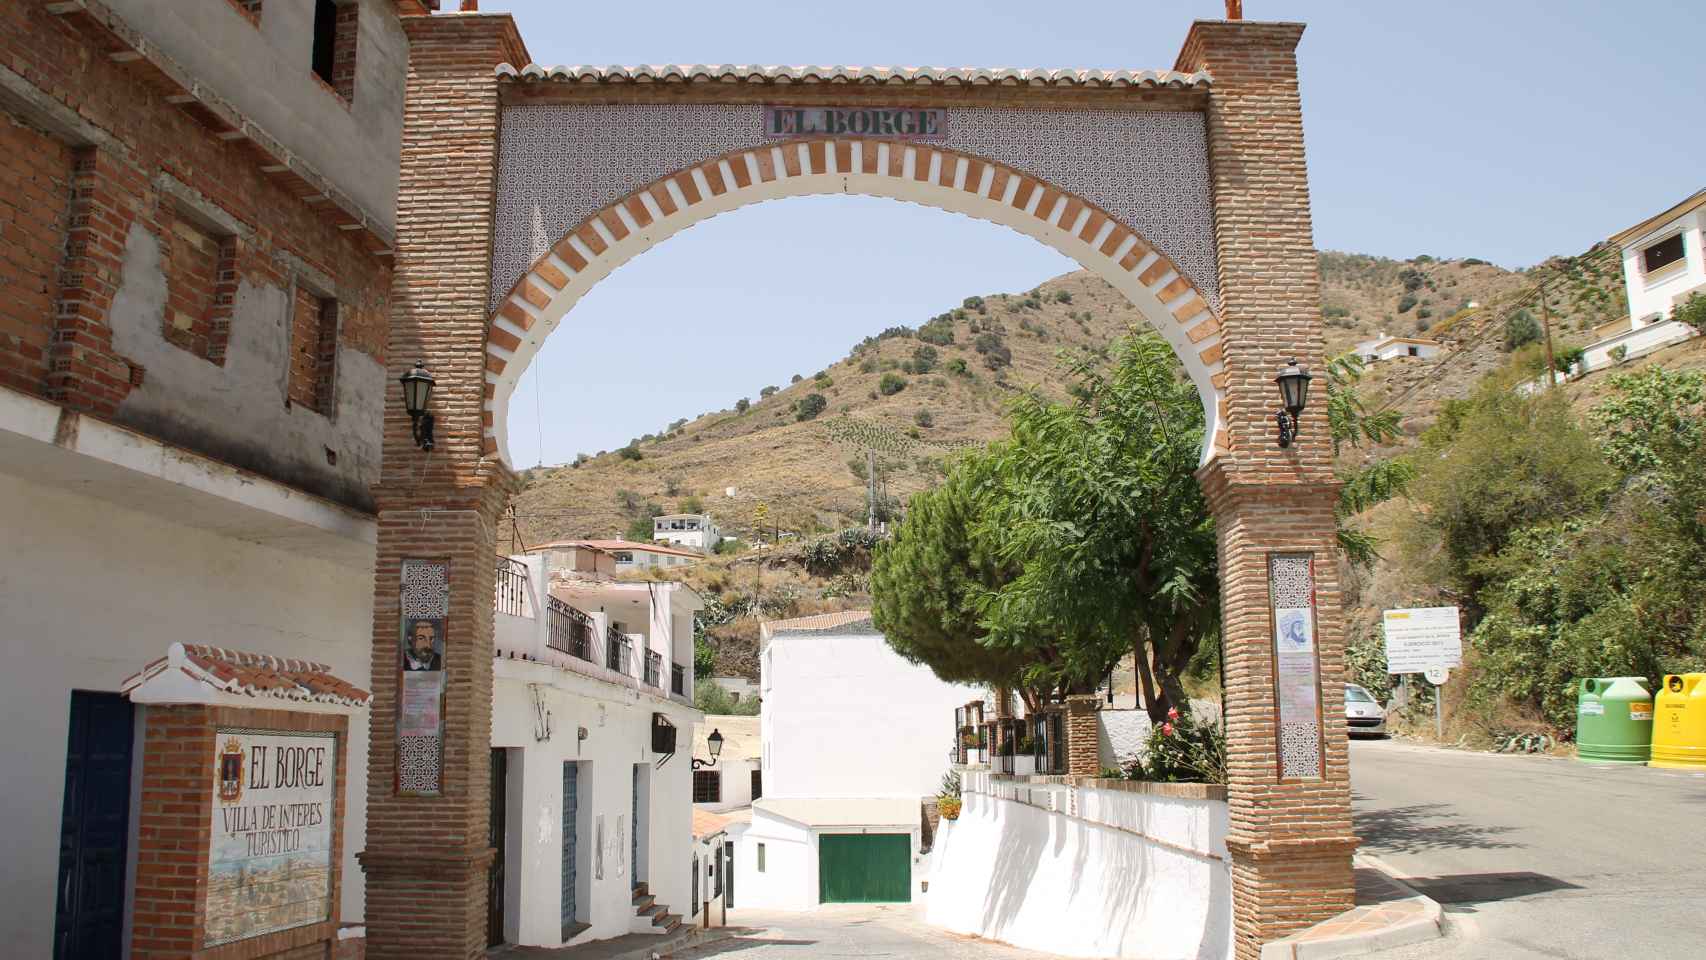 El arco homenaje de El Borge nos da la bienvenida a la localidad.